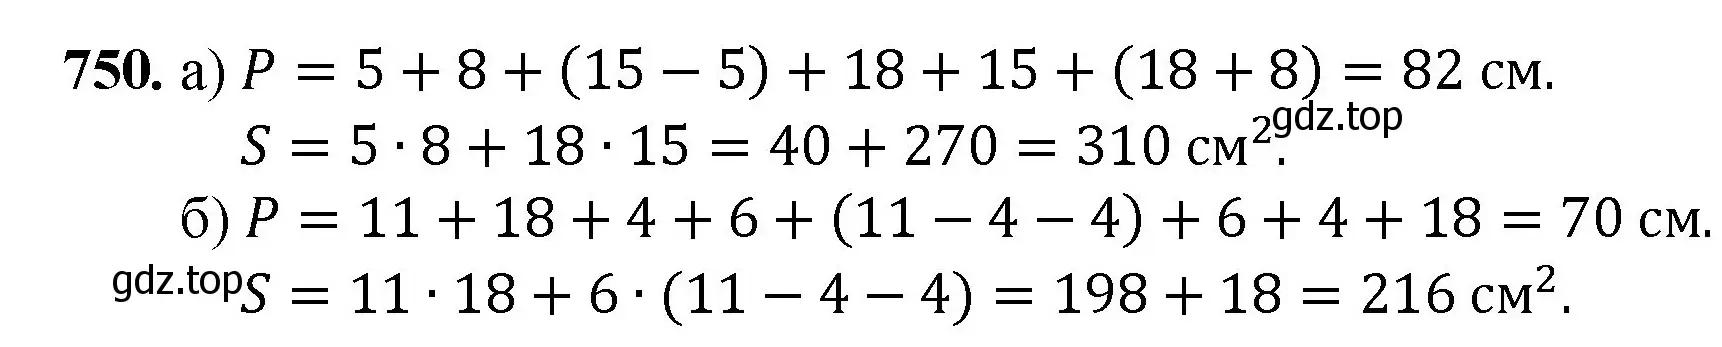 Решение номер 750 (страница 167) гдз по математике 5 класс Мерзляк, Полонский, учебник